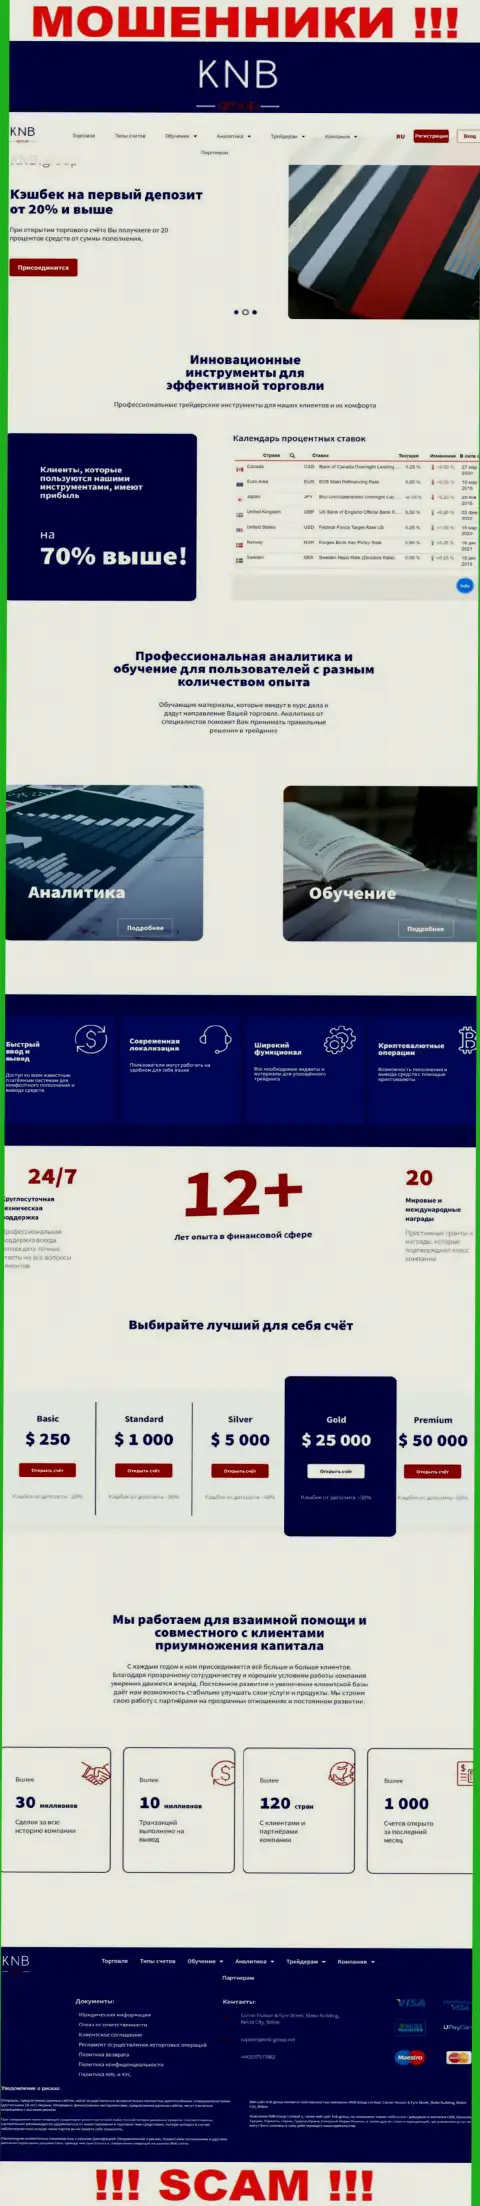 Обзор официального интернет-сервиса мошенников КНБ Групп